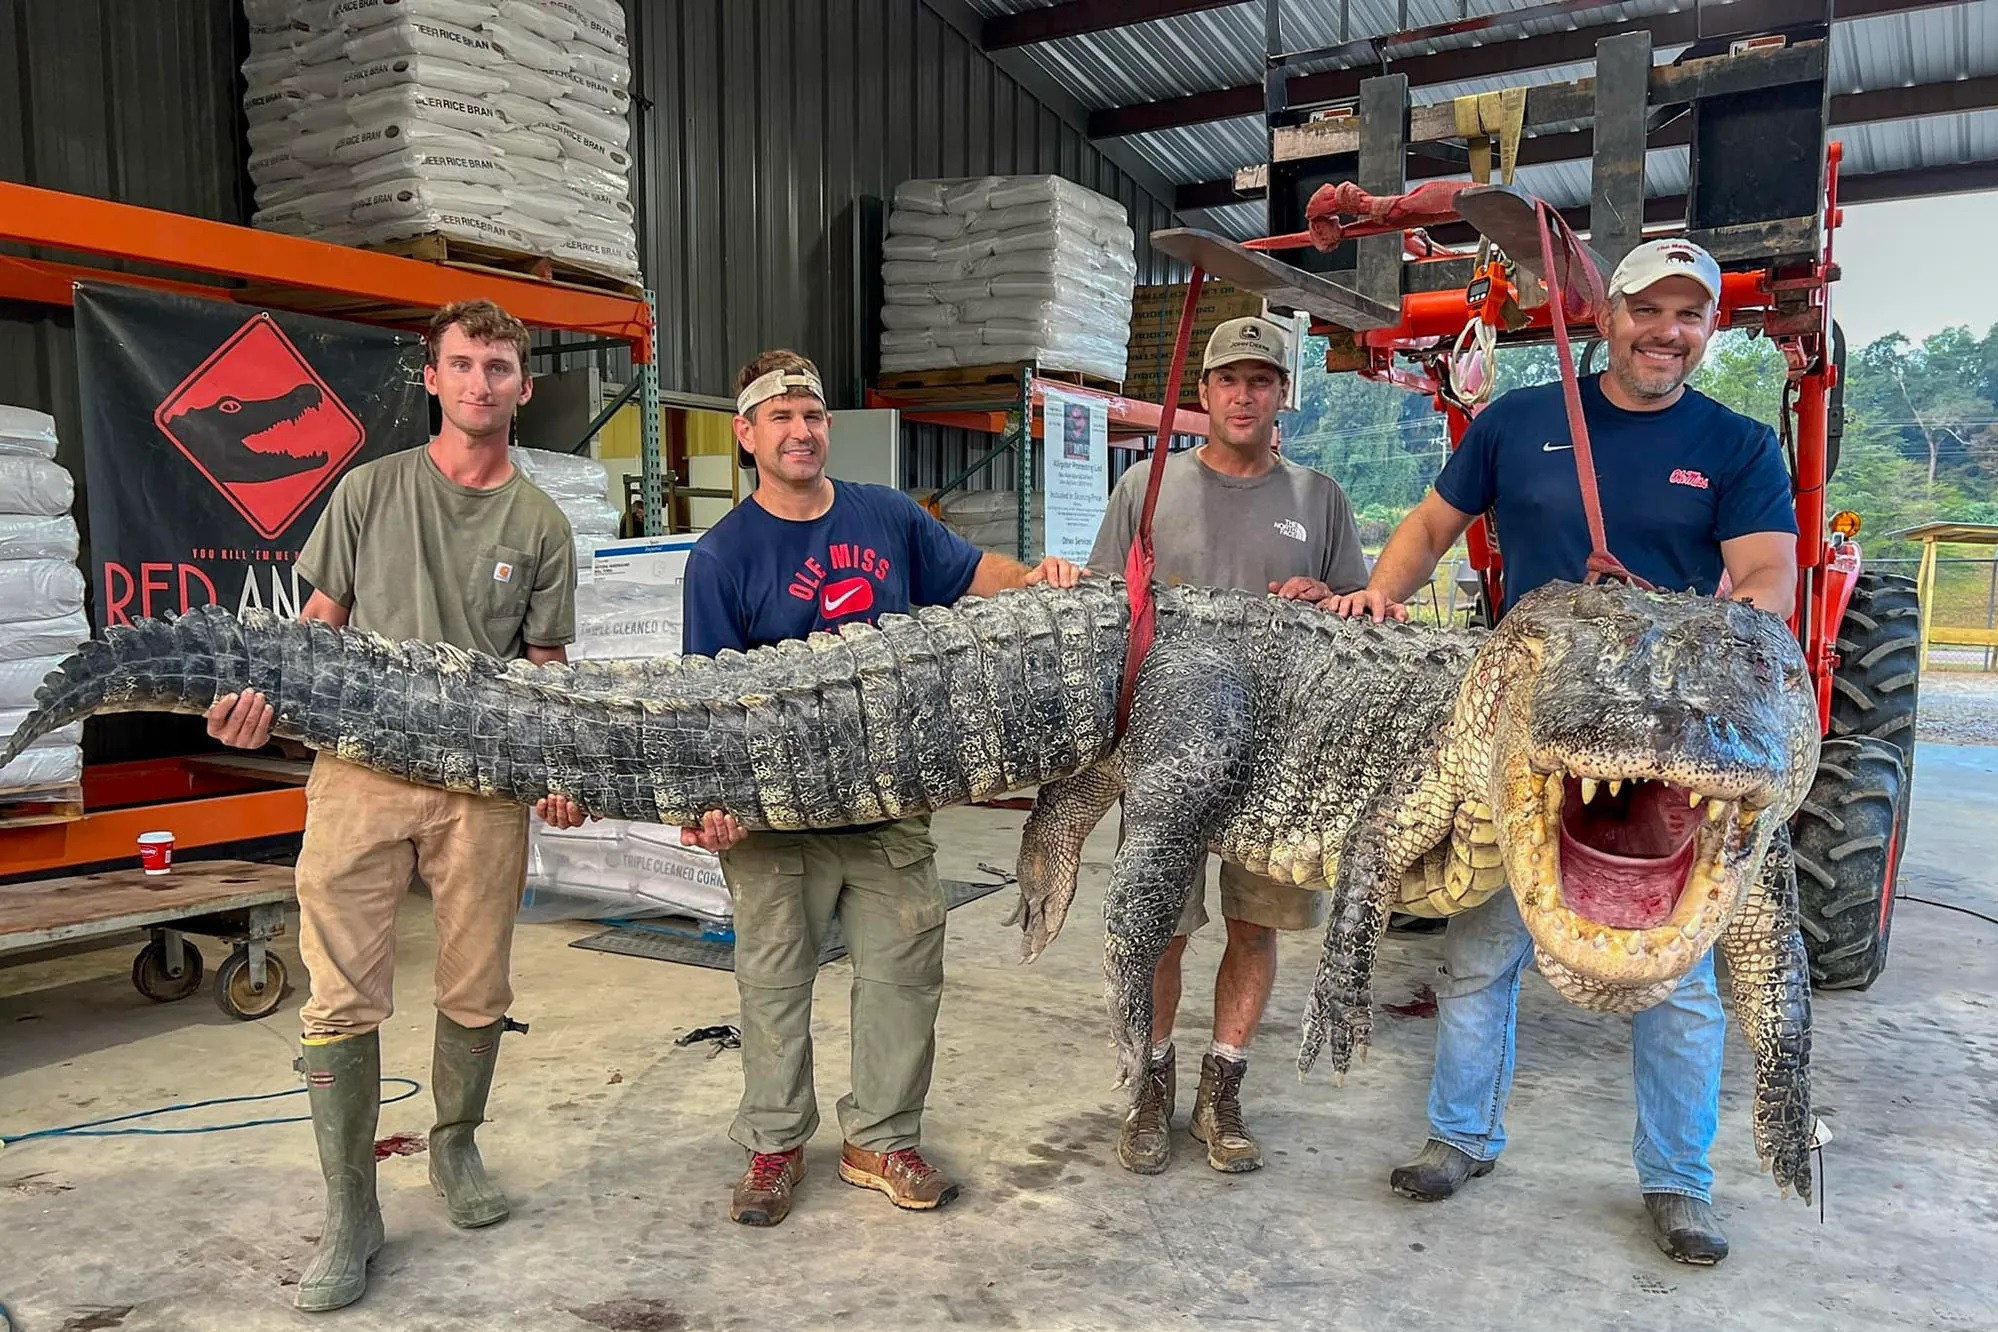 Bắt được cá sấu 'khủng' dài hơn 4 mét sau 7 tiếng vật lộn trên sông